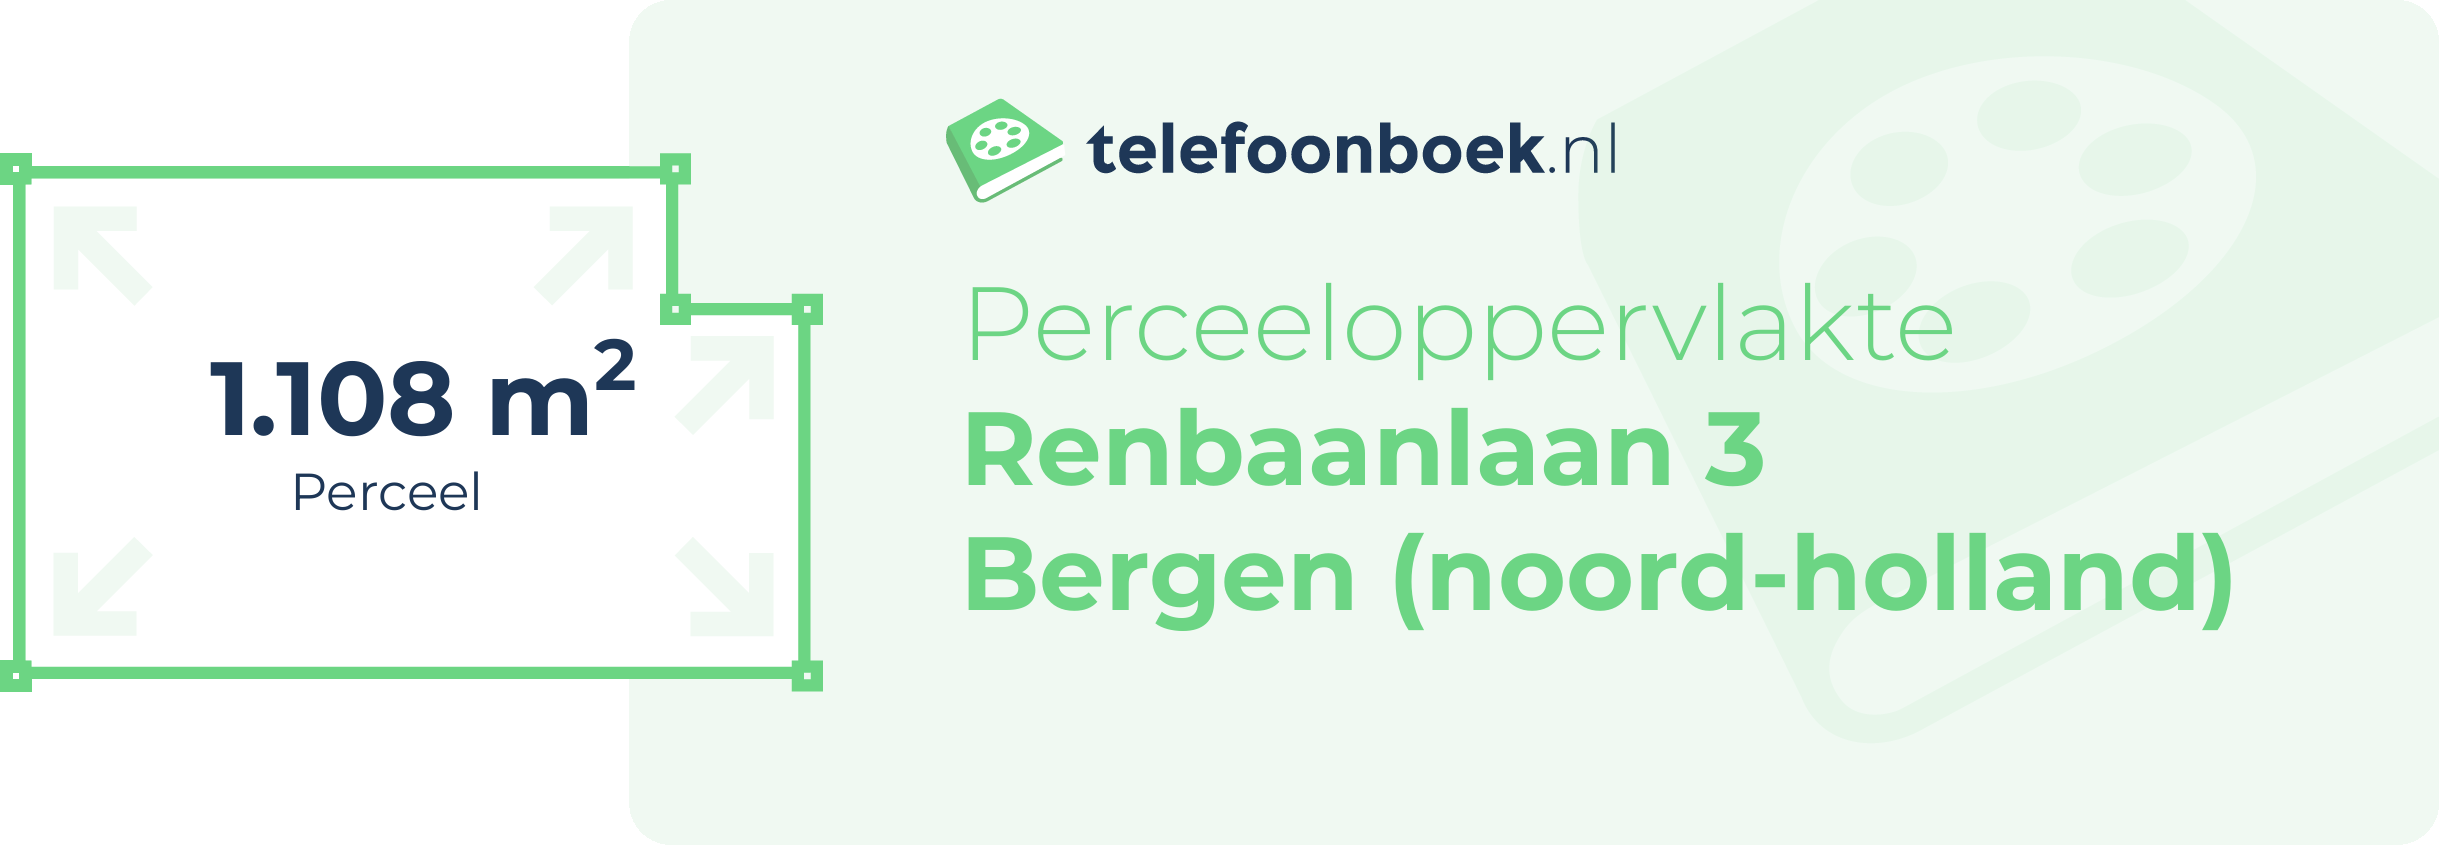 Perceeloppervlakte Renbaanlaan 3 Bergen (Noord-Holland)